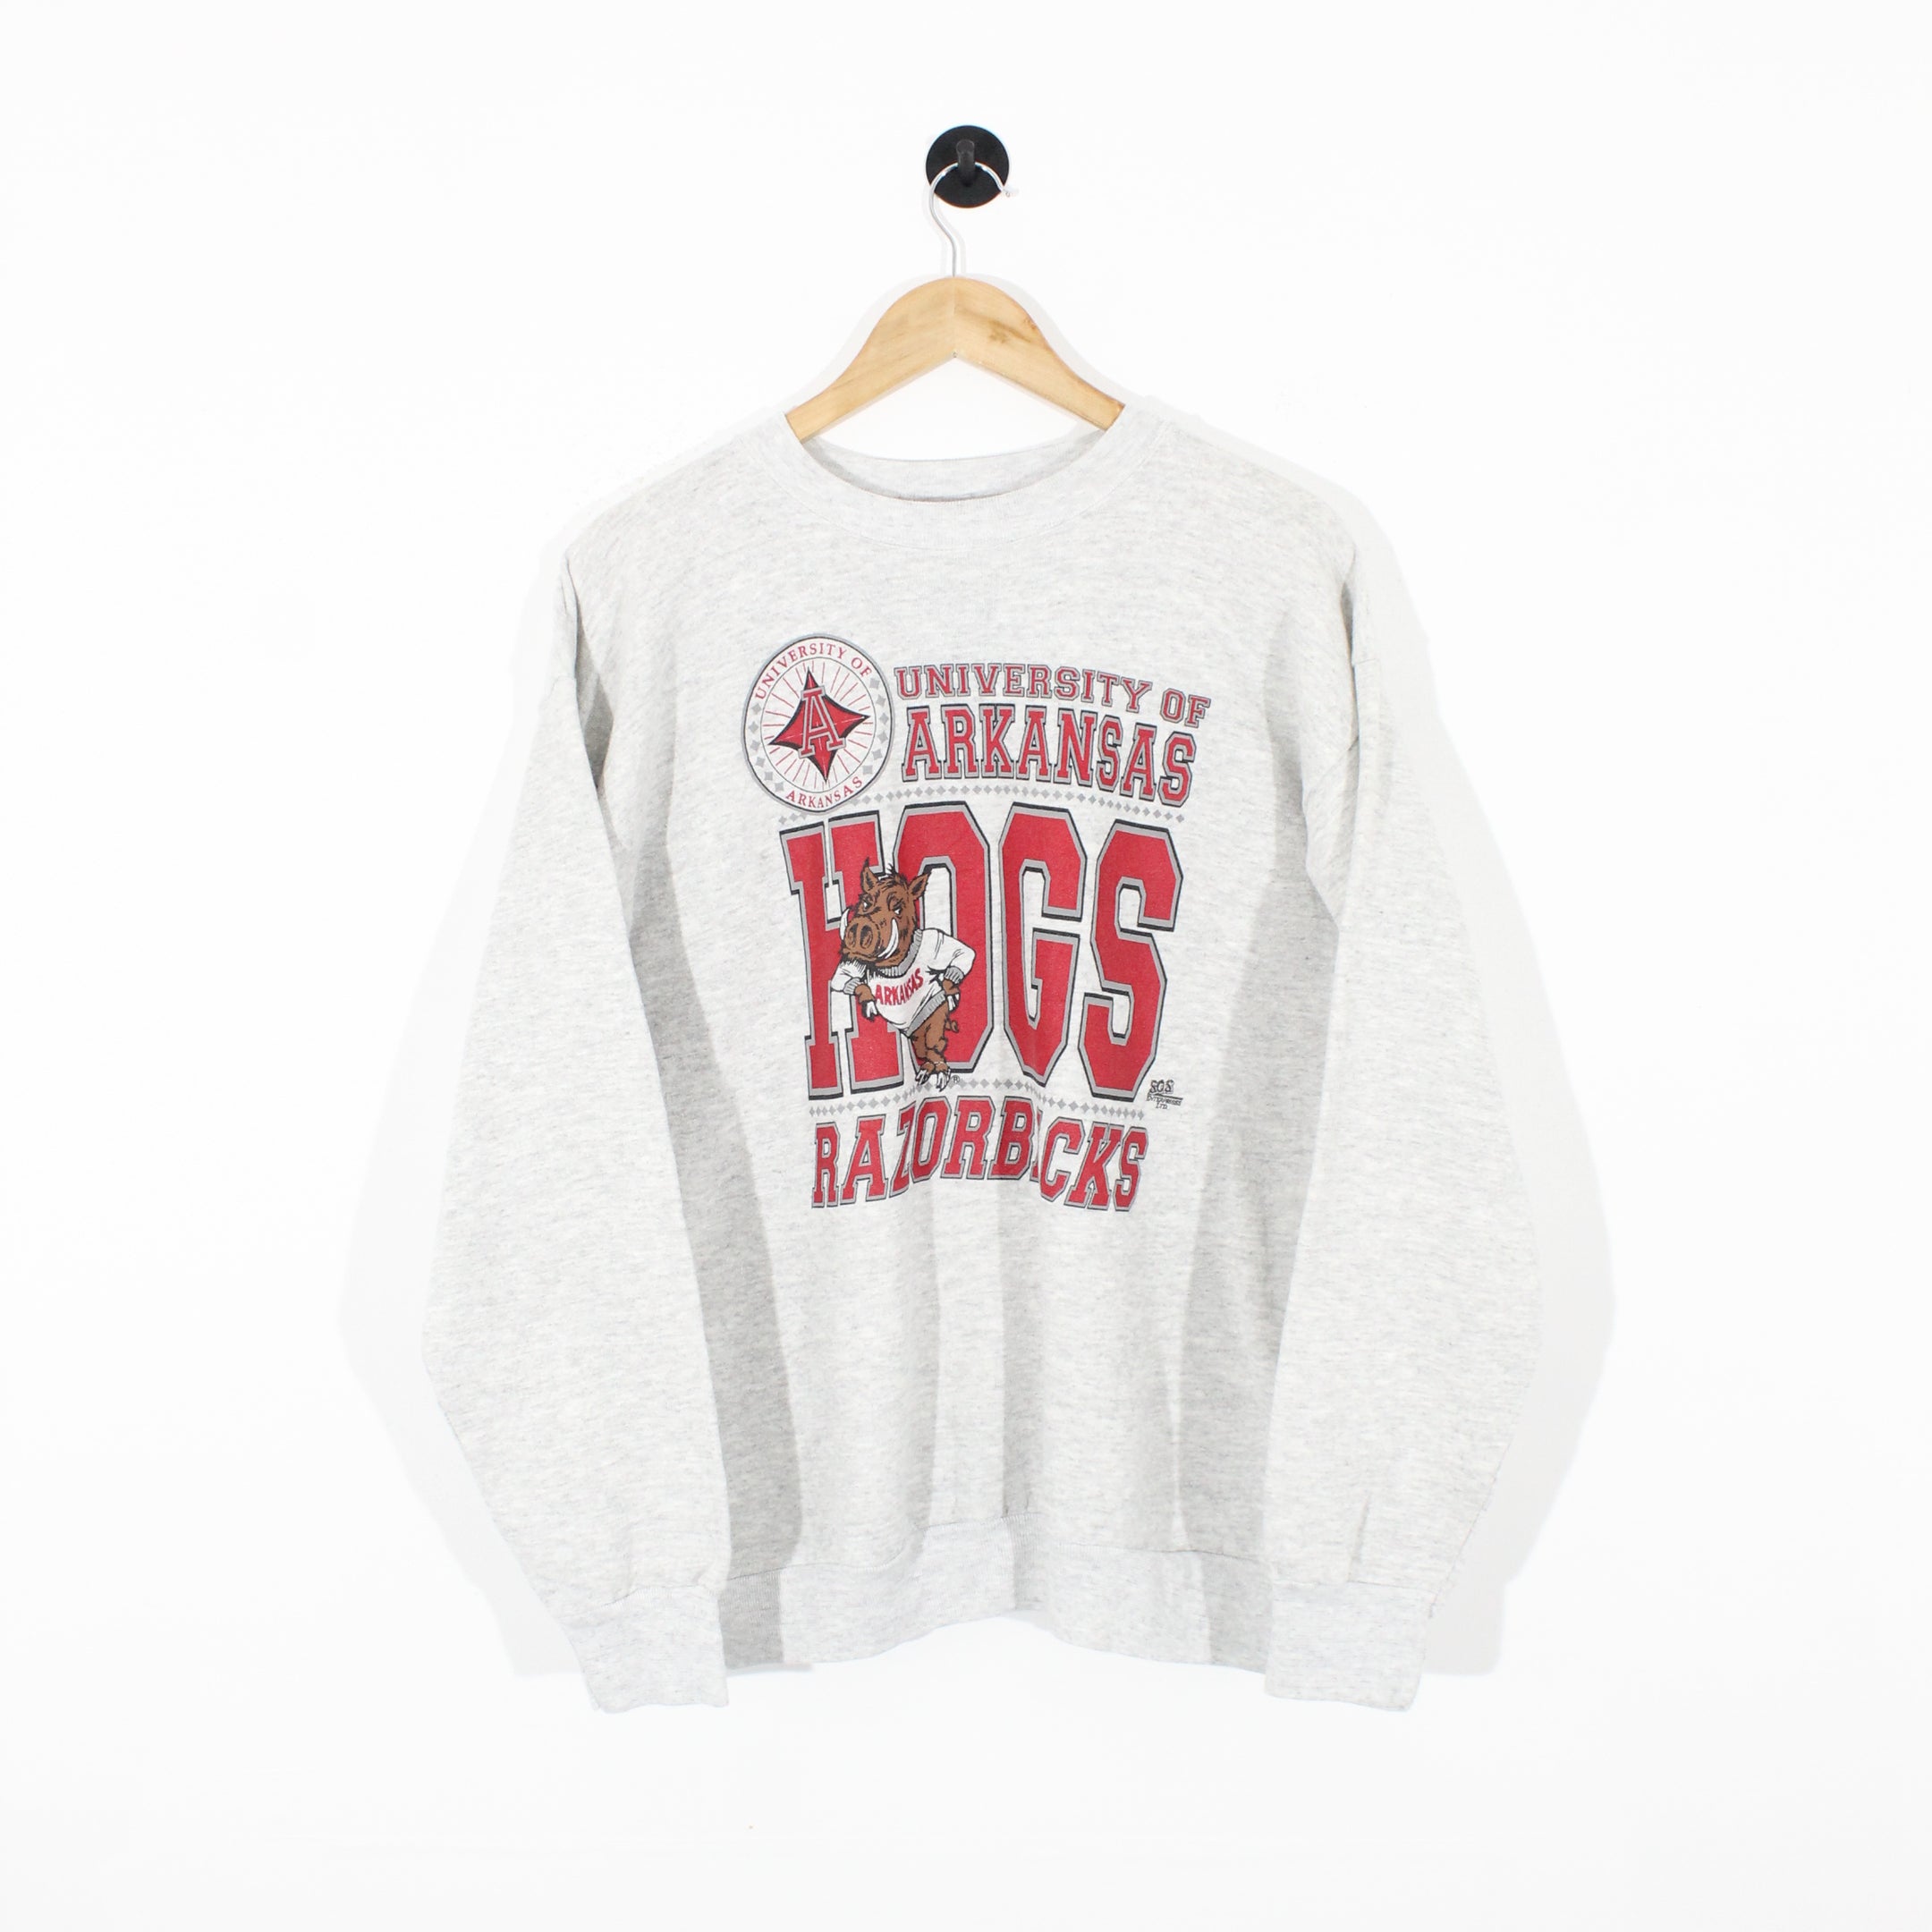 Vintage Arkansas Razorbacks Sweatshirt (L)